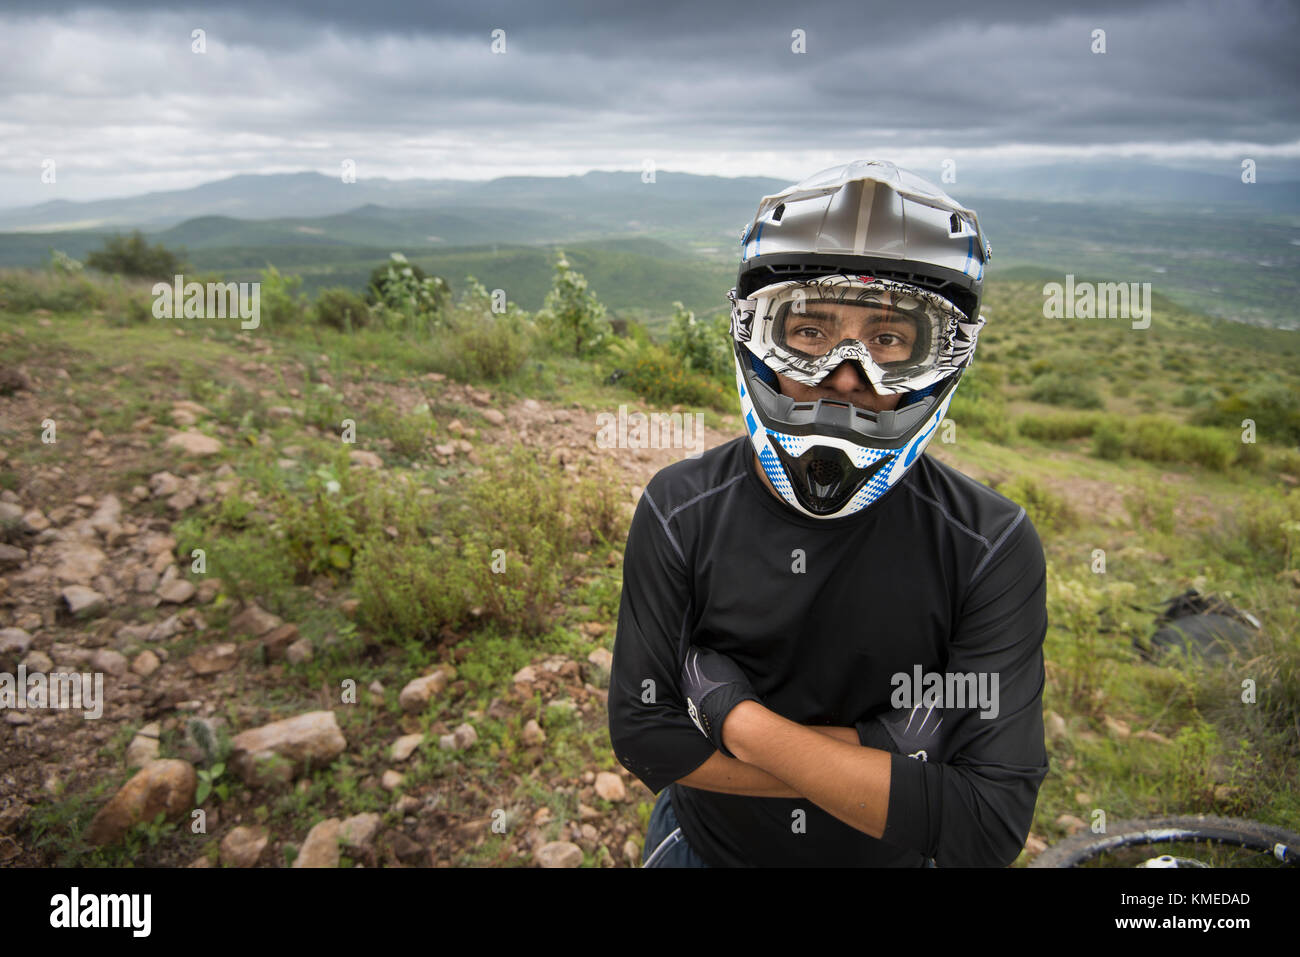 Ein Mountainbiker stellt für ein Porträt mit seinem Helm an Joya La Barreta Bereich in Queretaro, Mexiko. Stockfoto